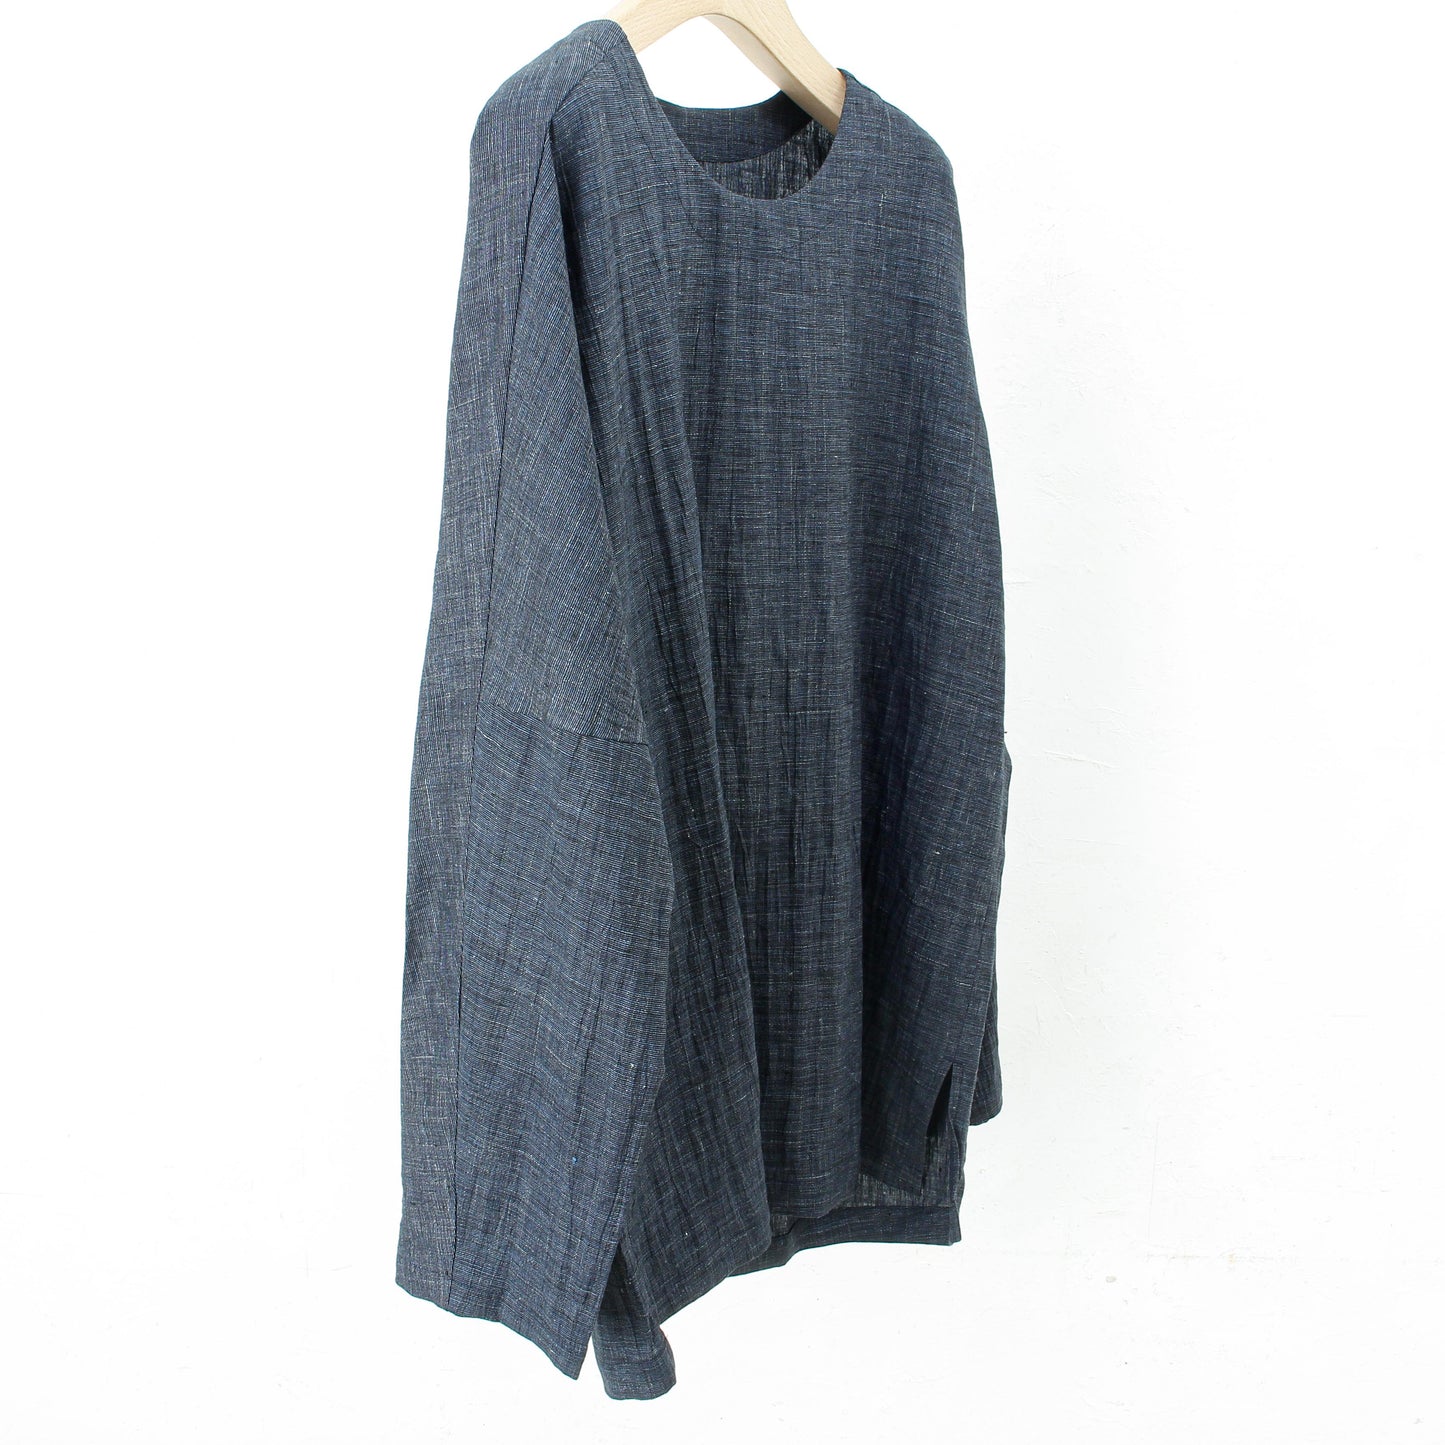 Wrinkled Linen Long Pullover / navy